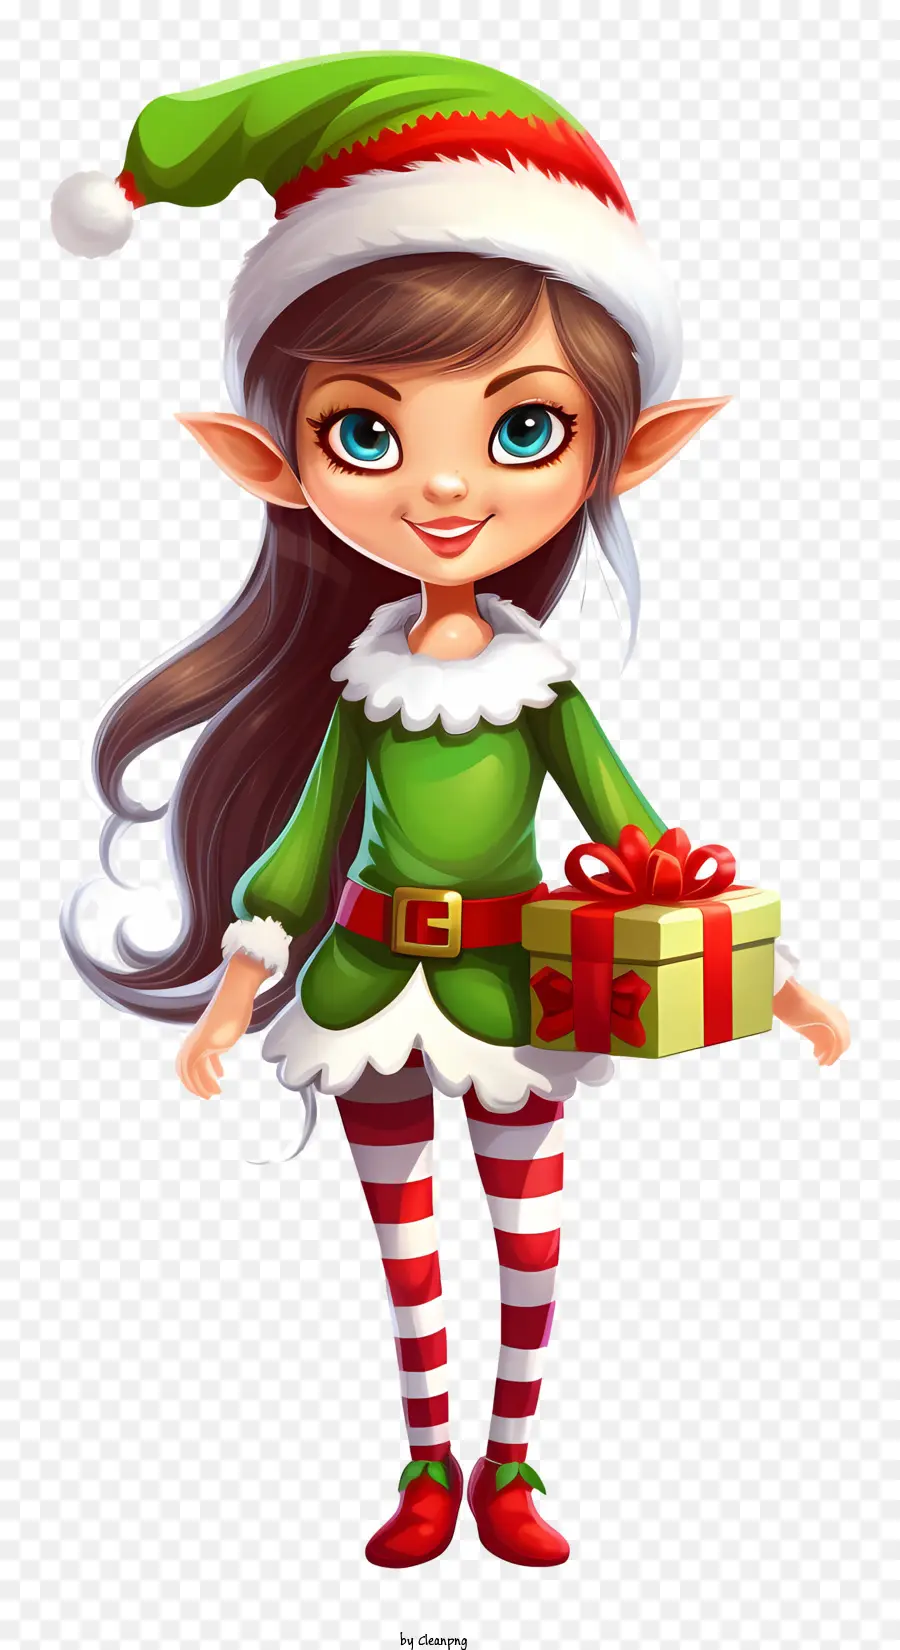 Elfo carino elfo elfo rosso capelli rosso cappello verde cappello elfo rosso e camicia a strisce bianche - Elfo carino con un regalo per capelli rossi